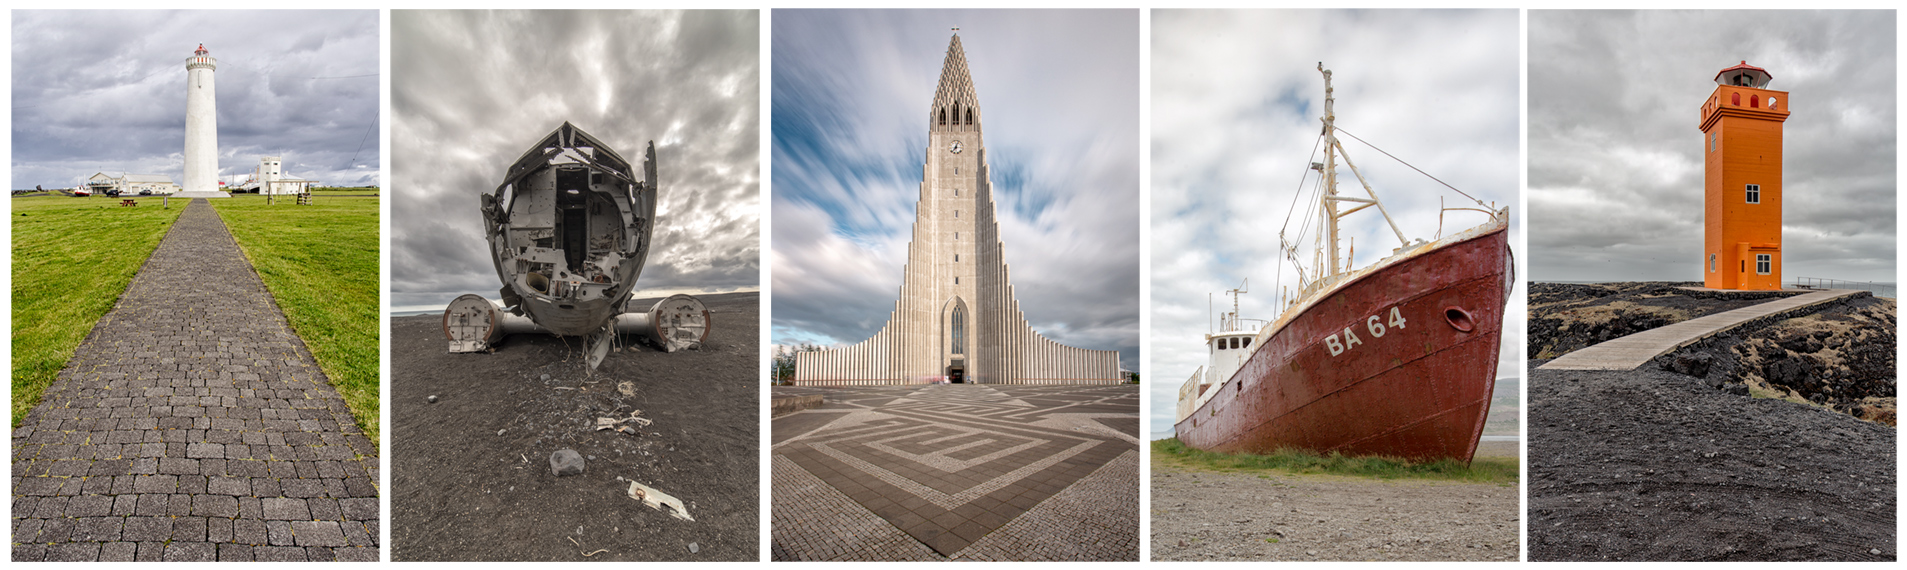 Storie di luoghi lontani  vertiali-uomo-1 Perché andare proprio in Islanda?